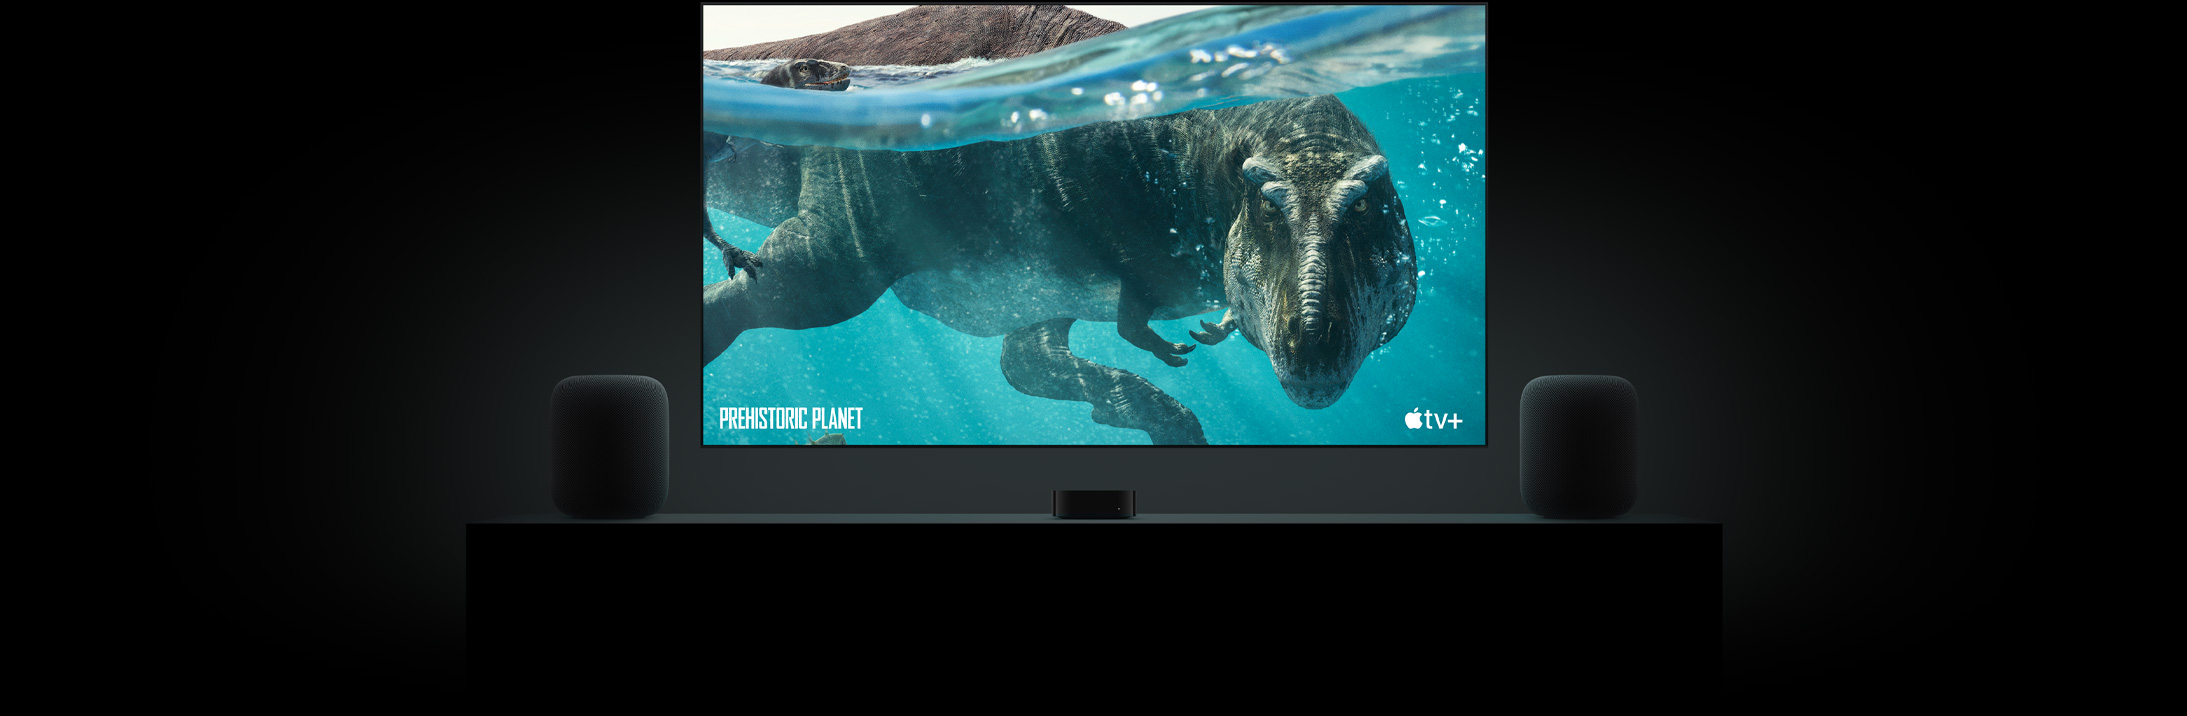 TV màn hình phẳng lớn có hình ảnh sống động của một con khủng long từ Prehistoric Planet.  TV được treo phía trên Apple TV và được đóng khung bởi hai loa HomePod đặt trên bảng điều khiển phòng khách